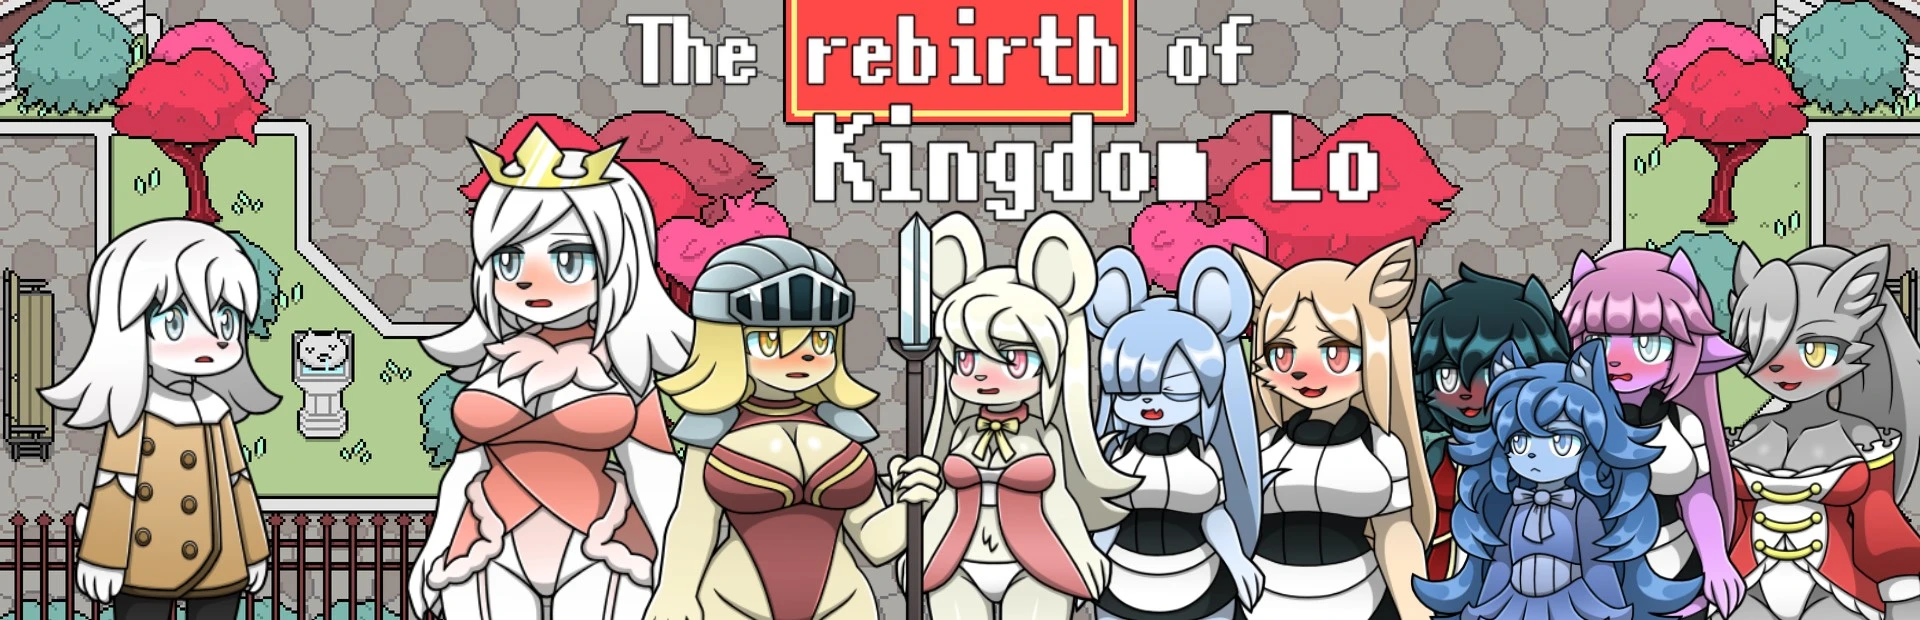 The rebirth of Kingdom Lo main image